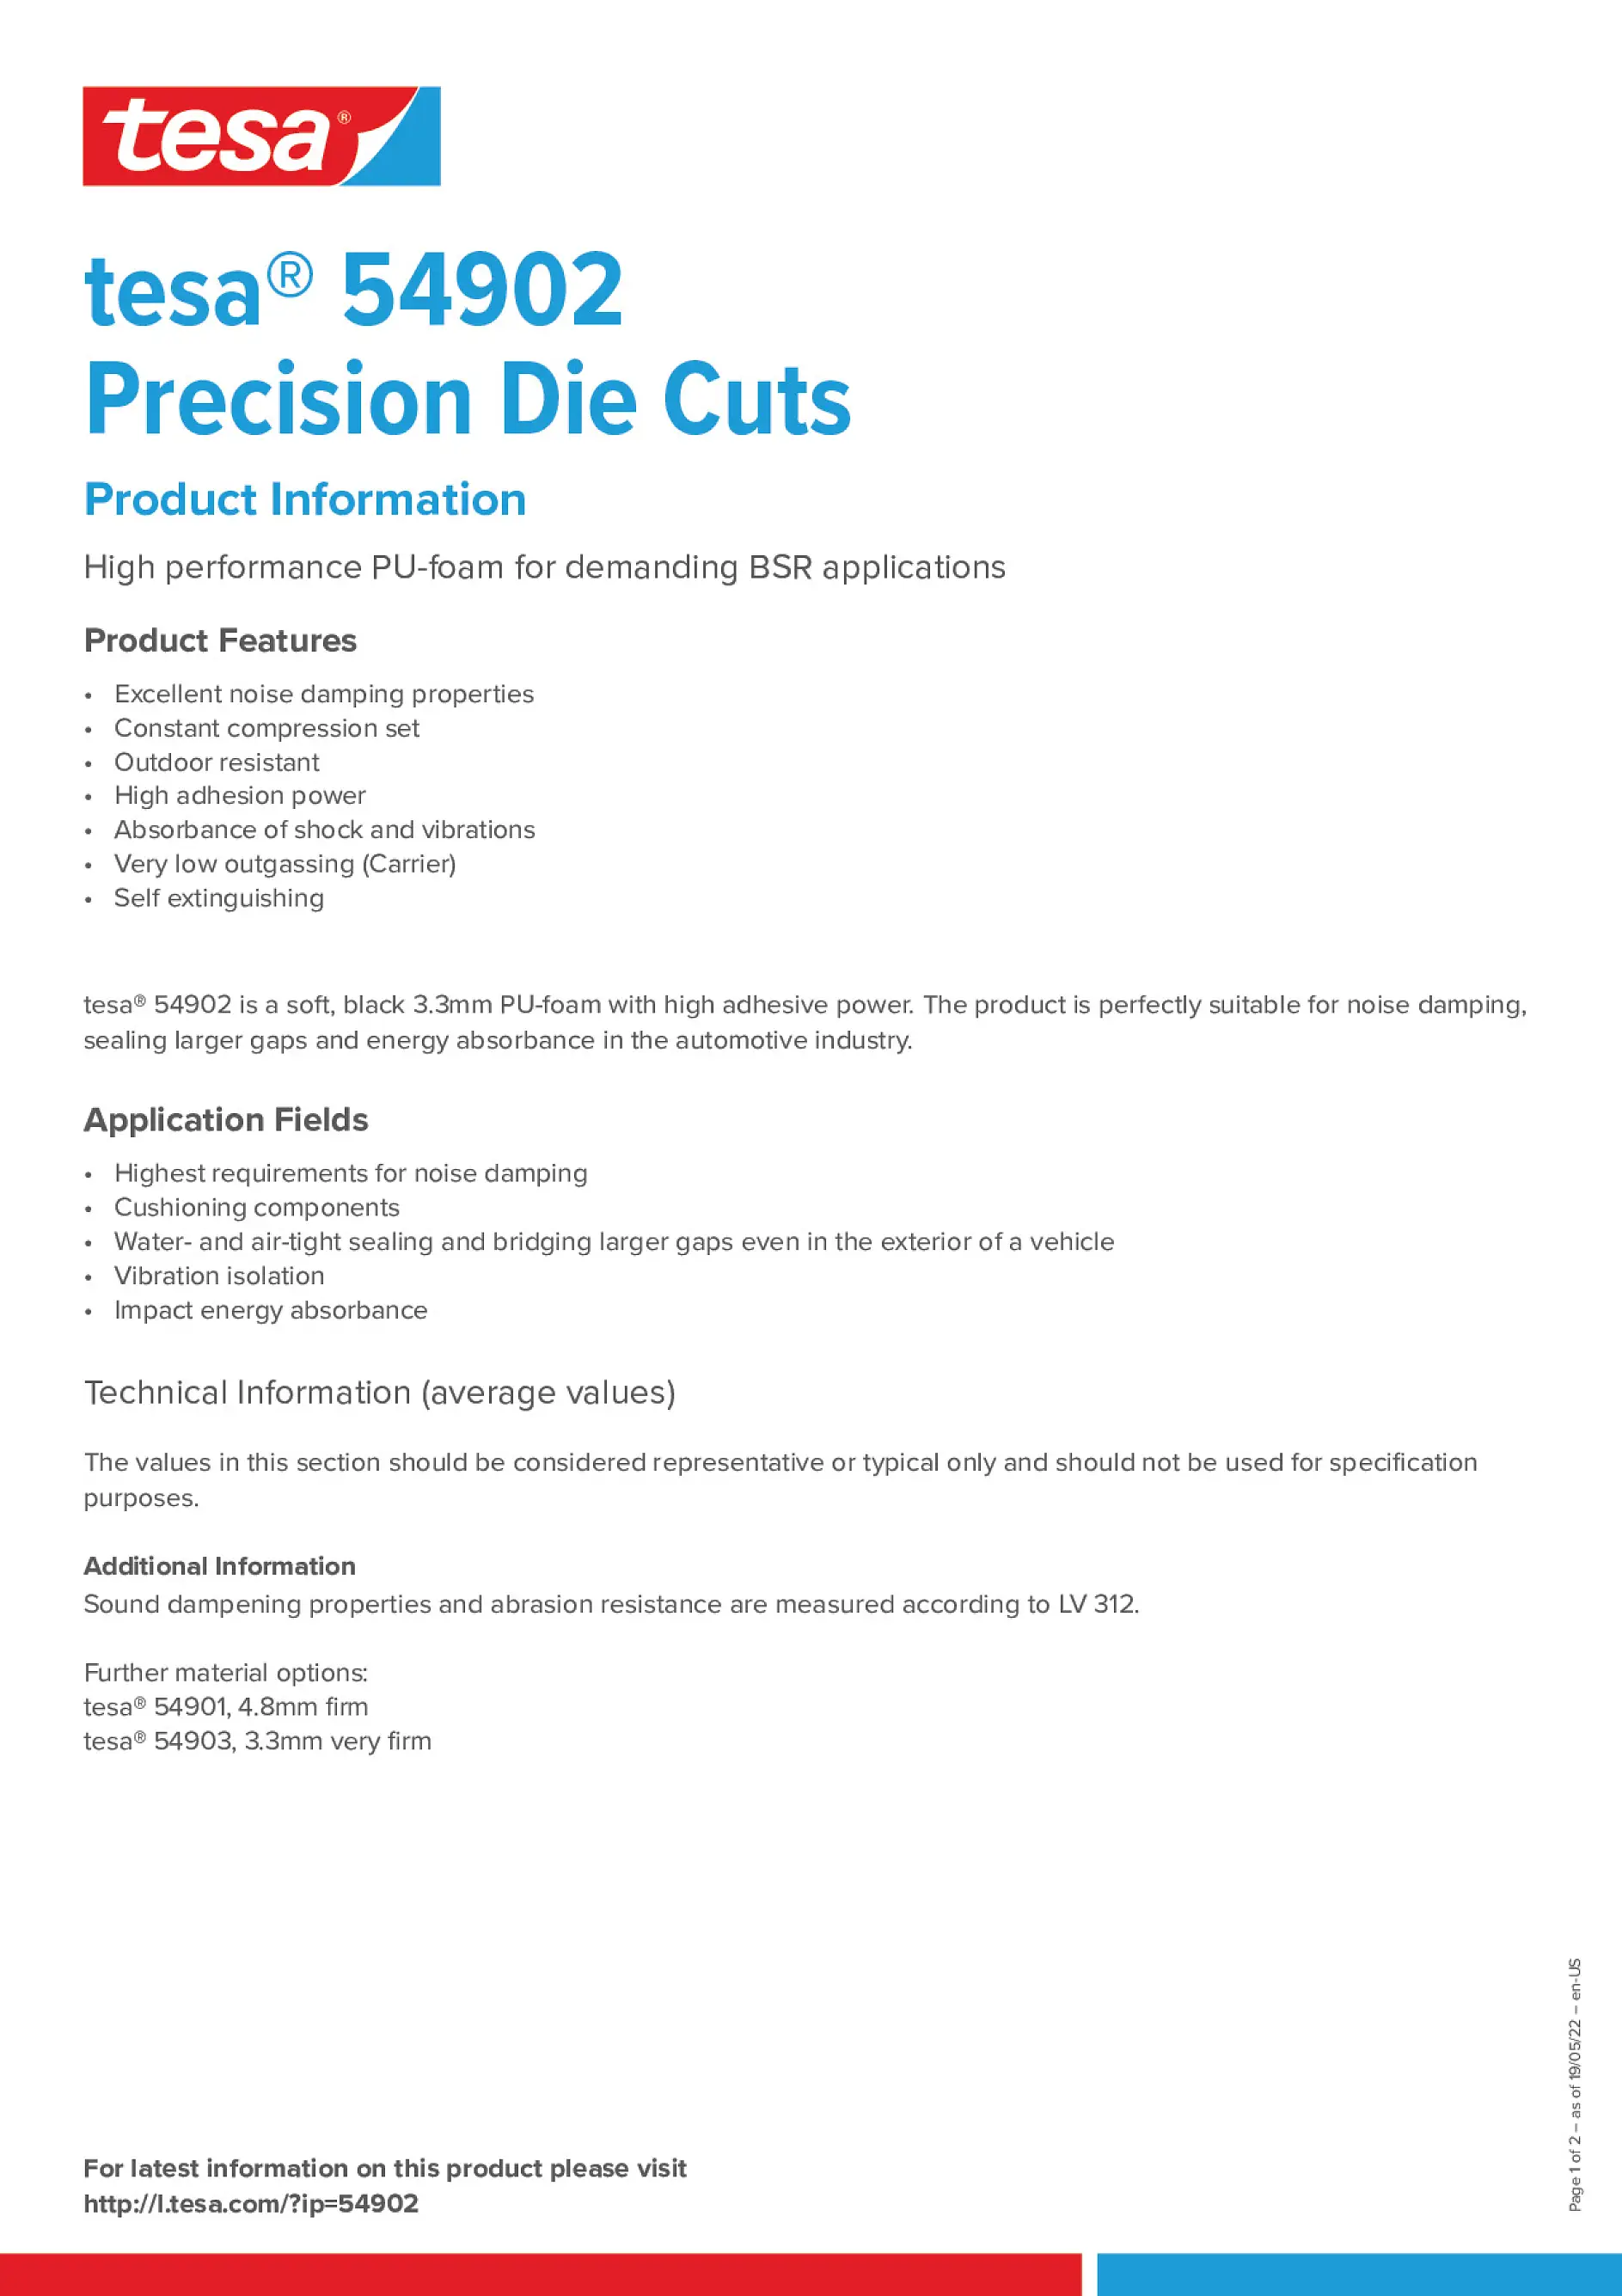 tesa_54902_Precision_Die_Cuts_en-US